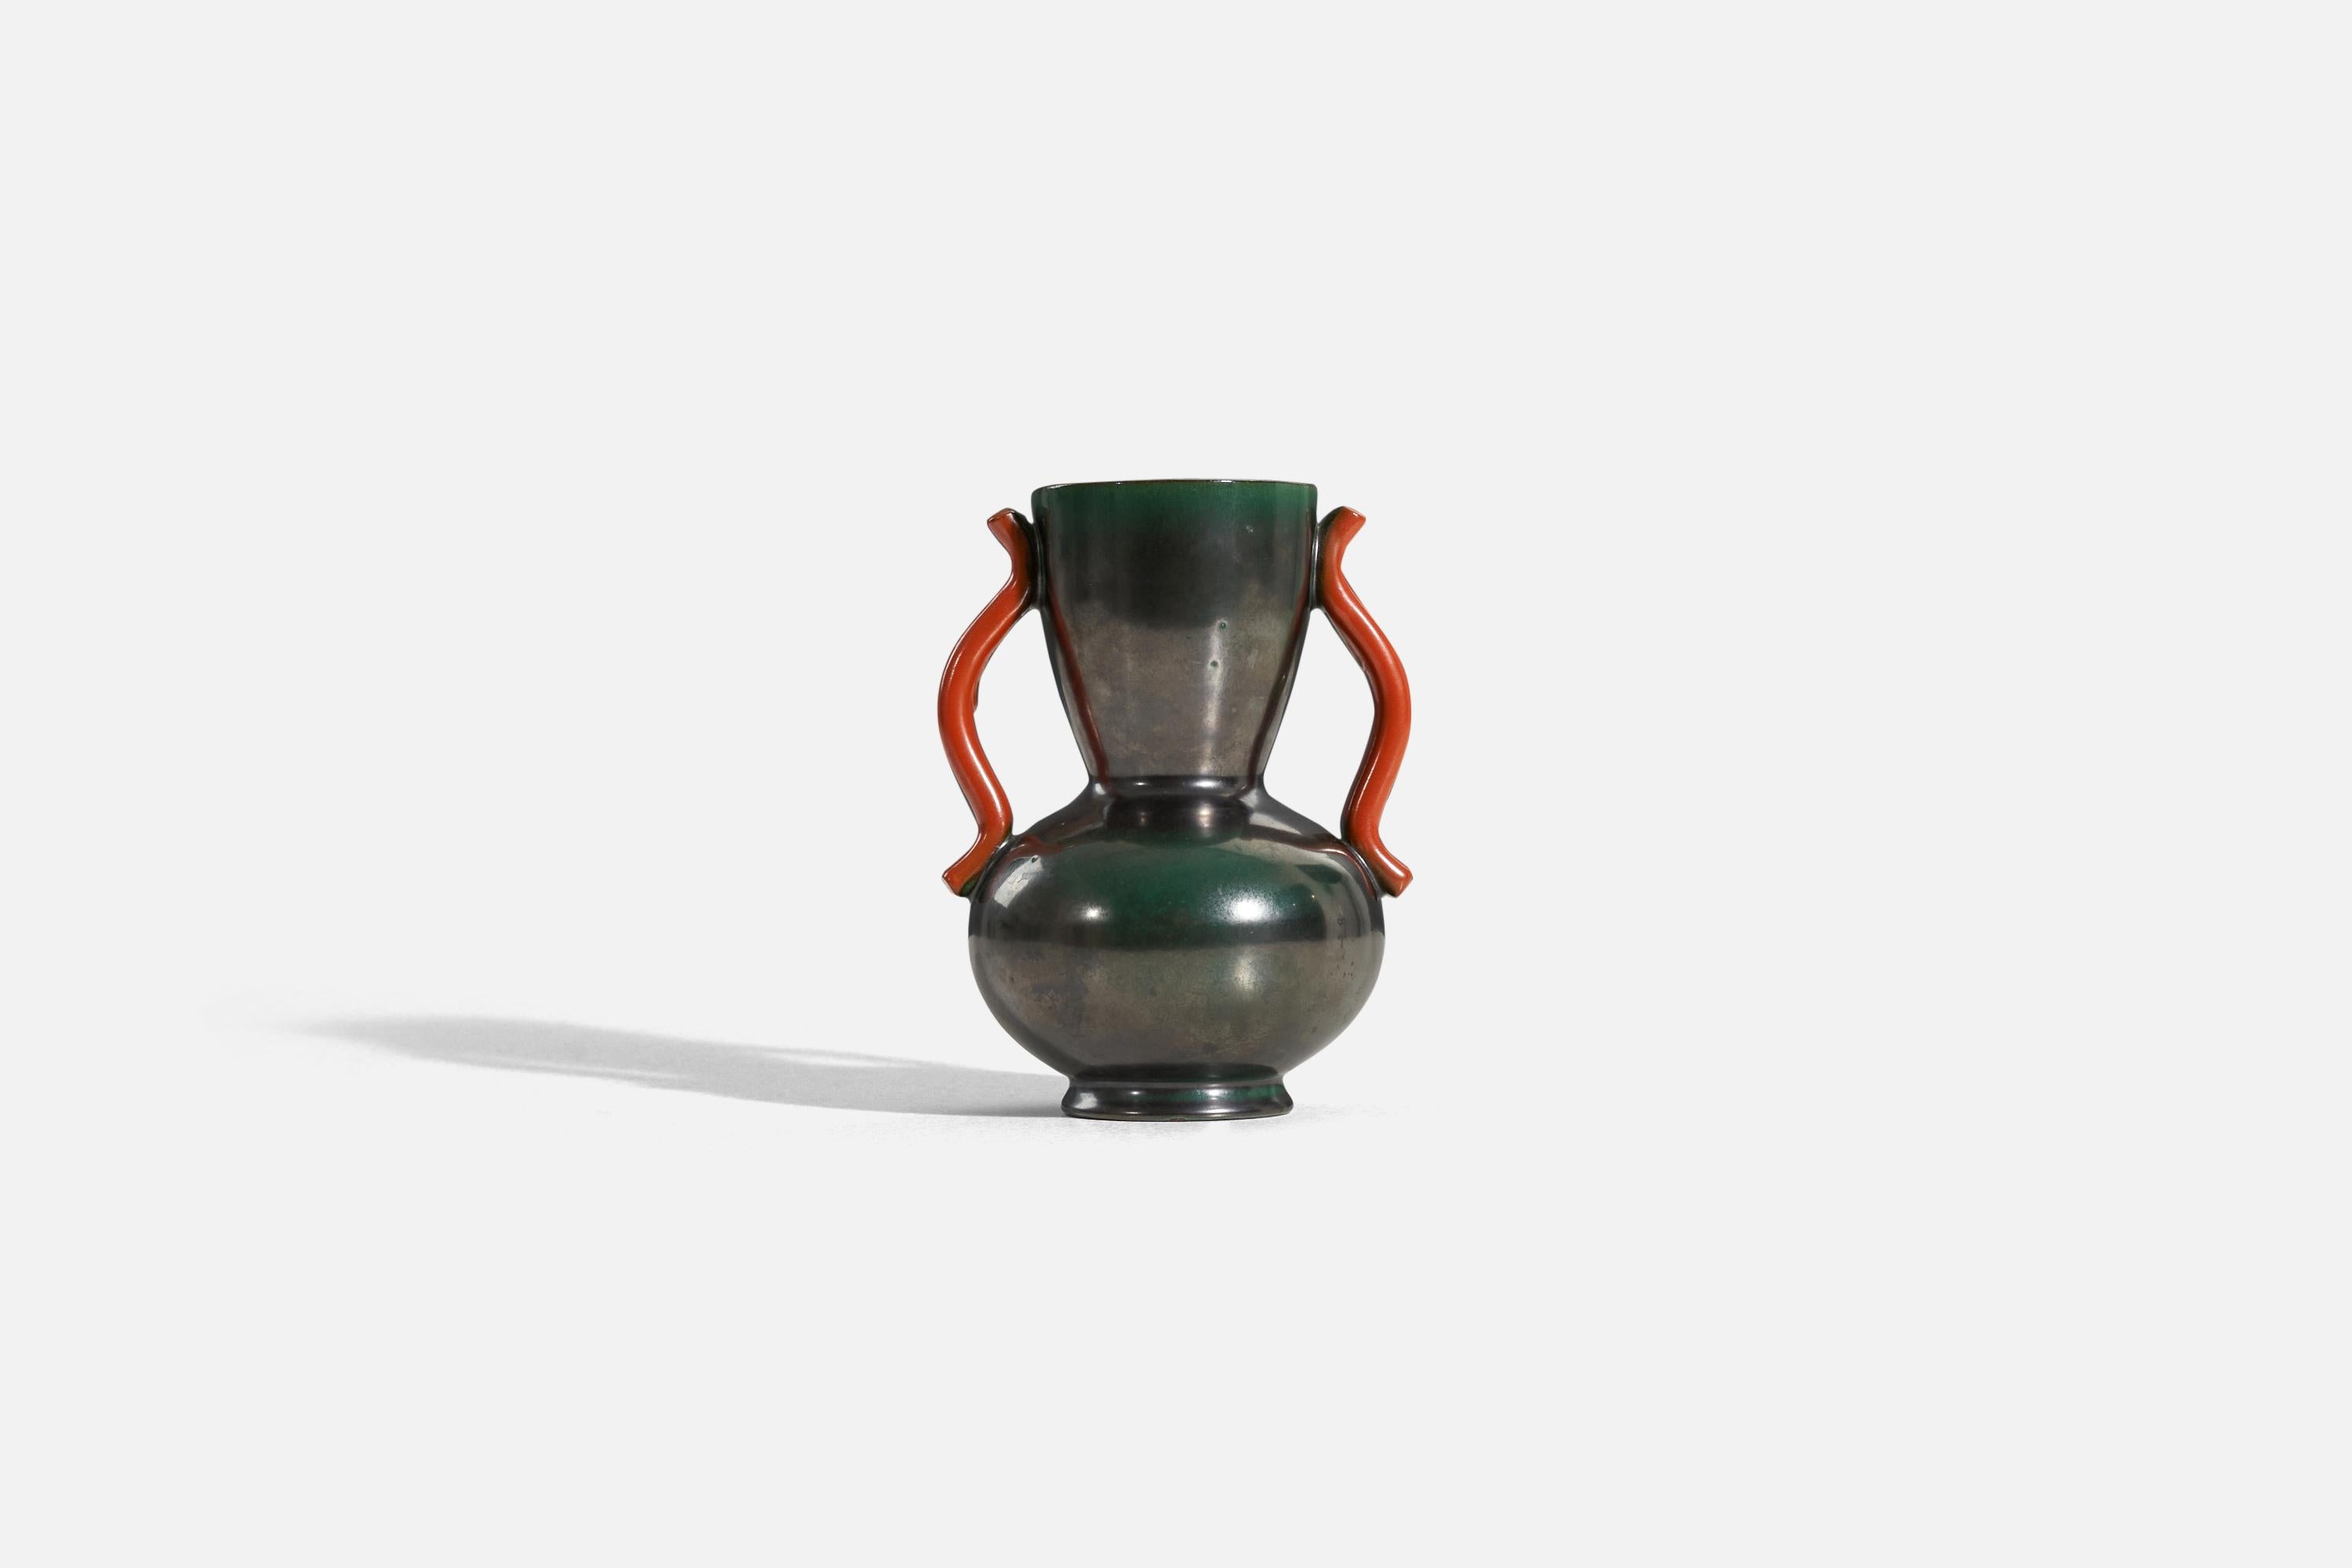 Vase en faïence émaillée verte, brune et orange, conçu par Anna-Lisa Thomson et produit par Upsala-Ekeby, Suède, années 1940. 

